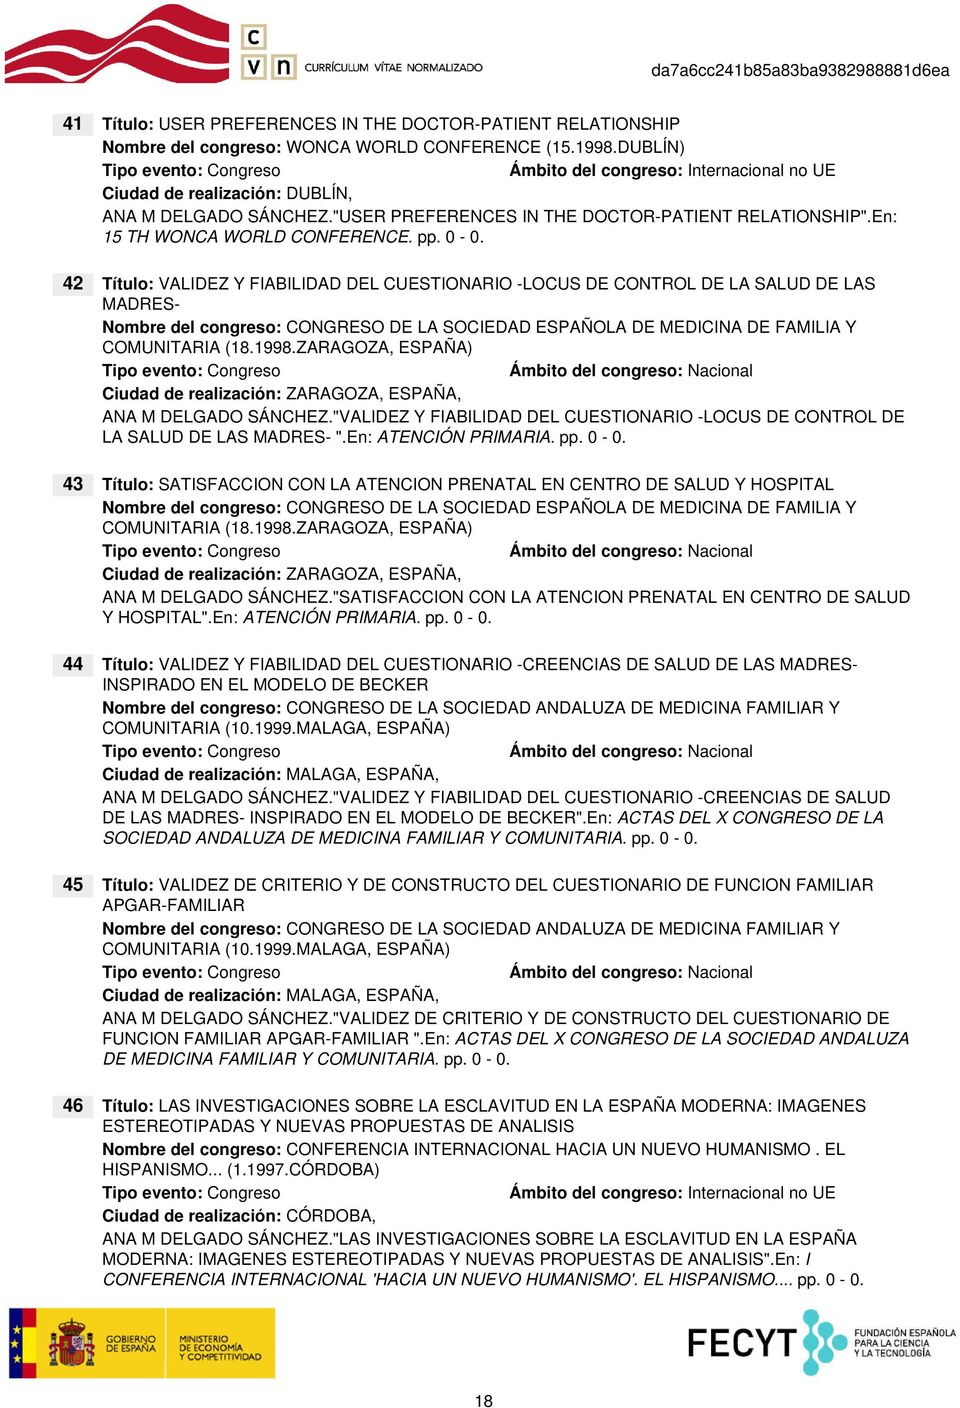 42 Título: VALIDEZ Y FIABILIDAD DEL CUESTIONARIO -LOCUS DE CONTROL DE LA SALUD DE LAS MADRES- Nombre del congreso: CONGRESO DE LA SOCIEDAD ESPAÑOLA DE MEDICINA DE FAMILIA Y COMUNITARIA (18.1998.